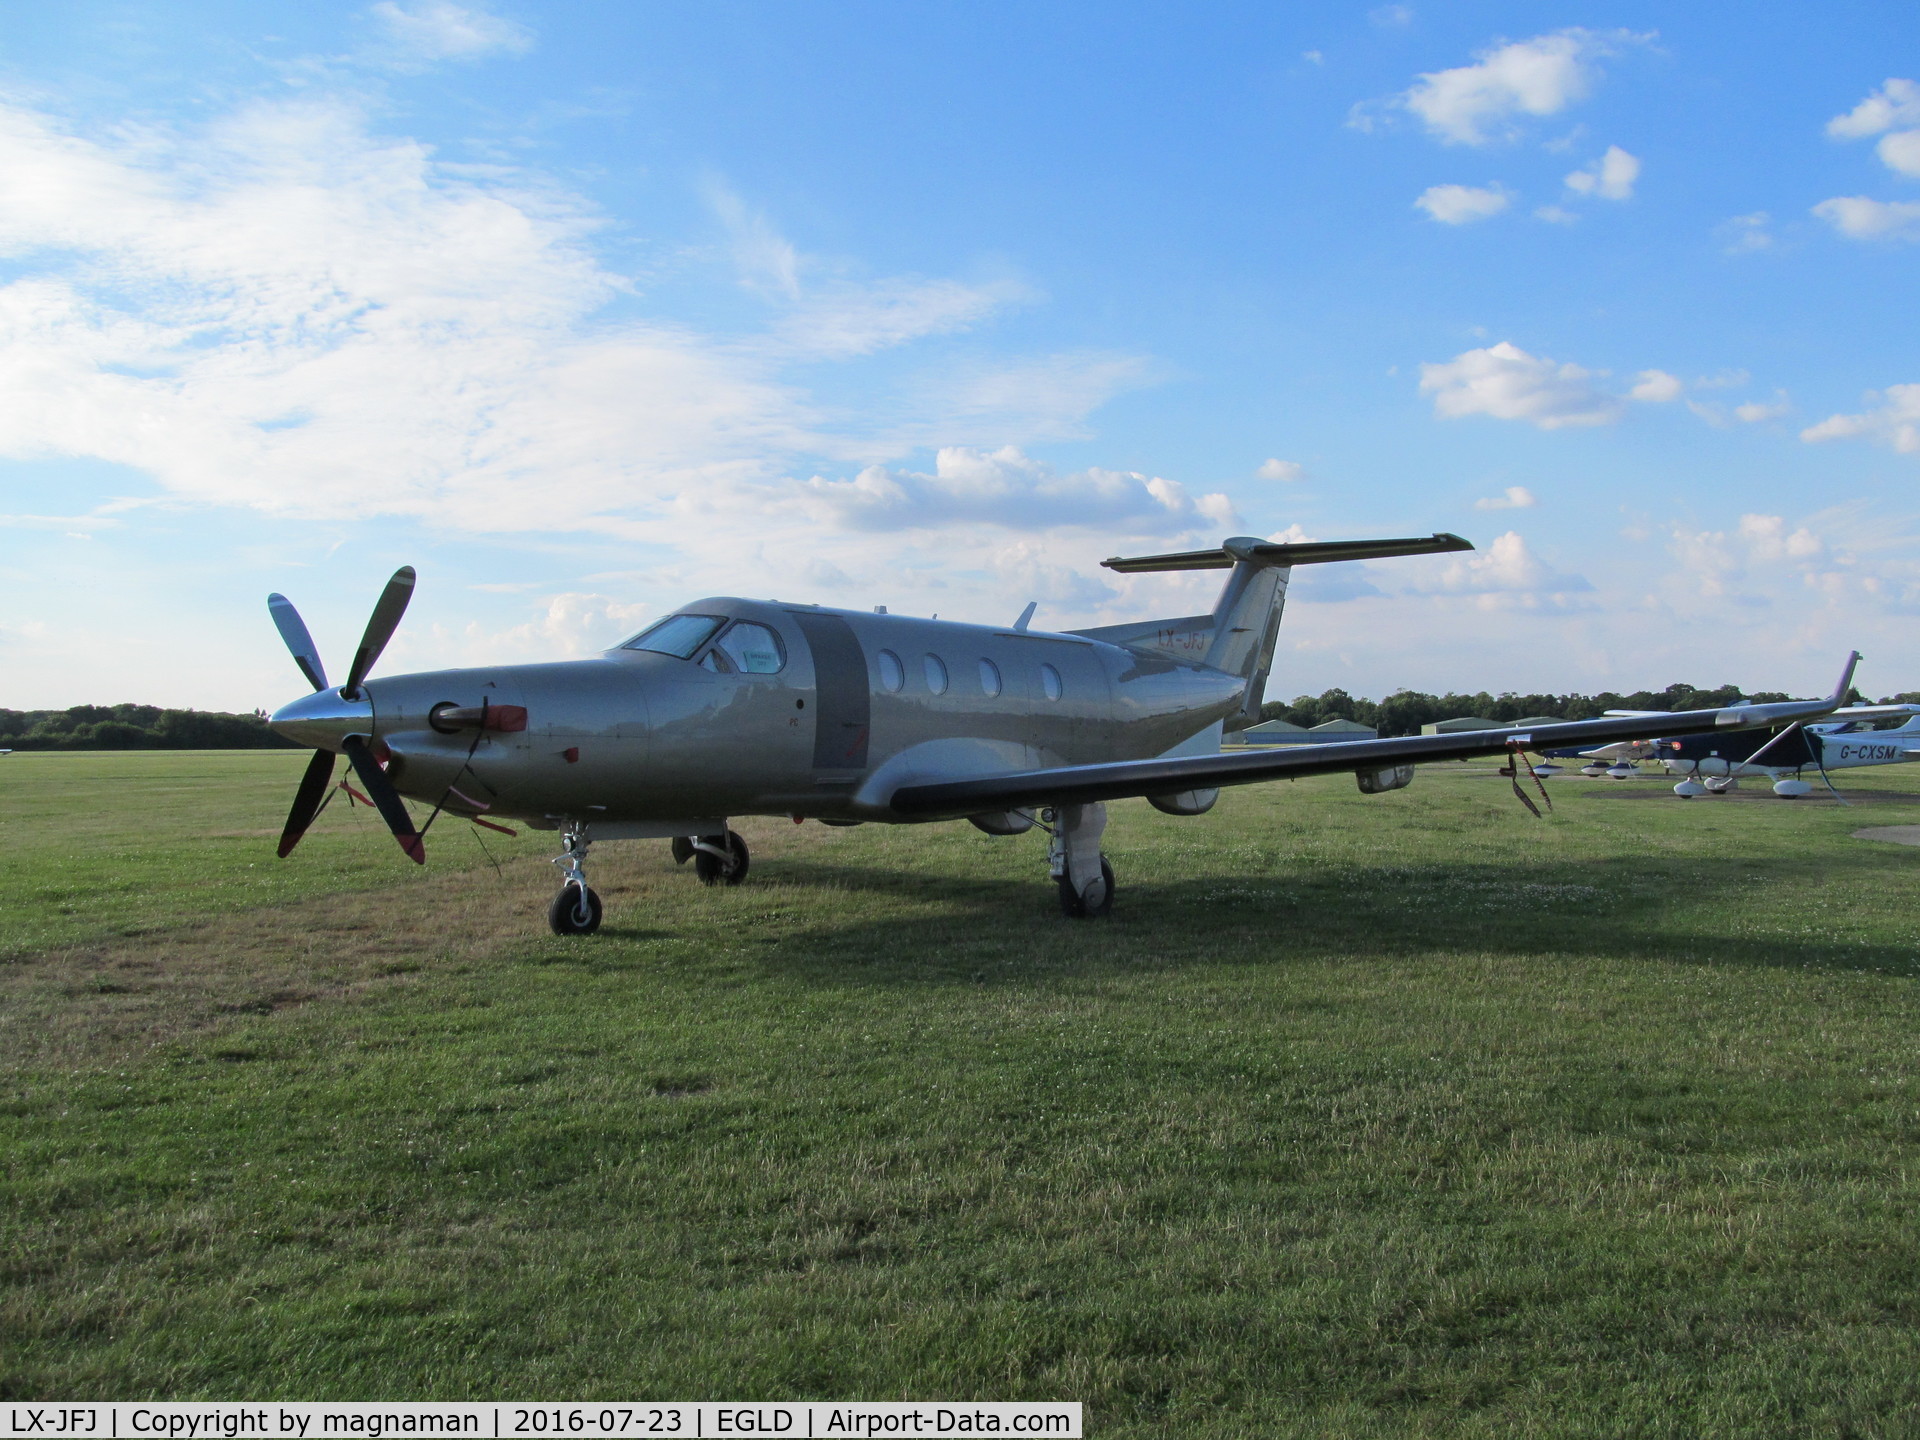 LX-JFJ, 2005 Pilatus PC-12/45 C/N 678, at denham